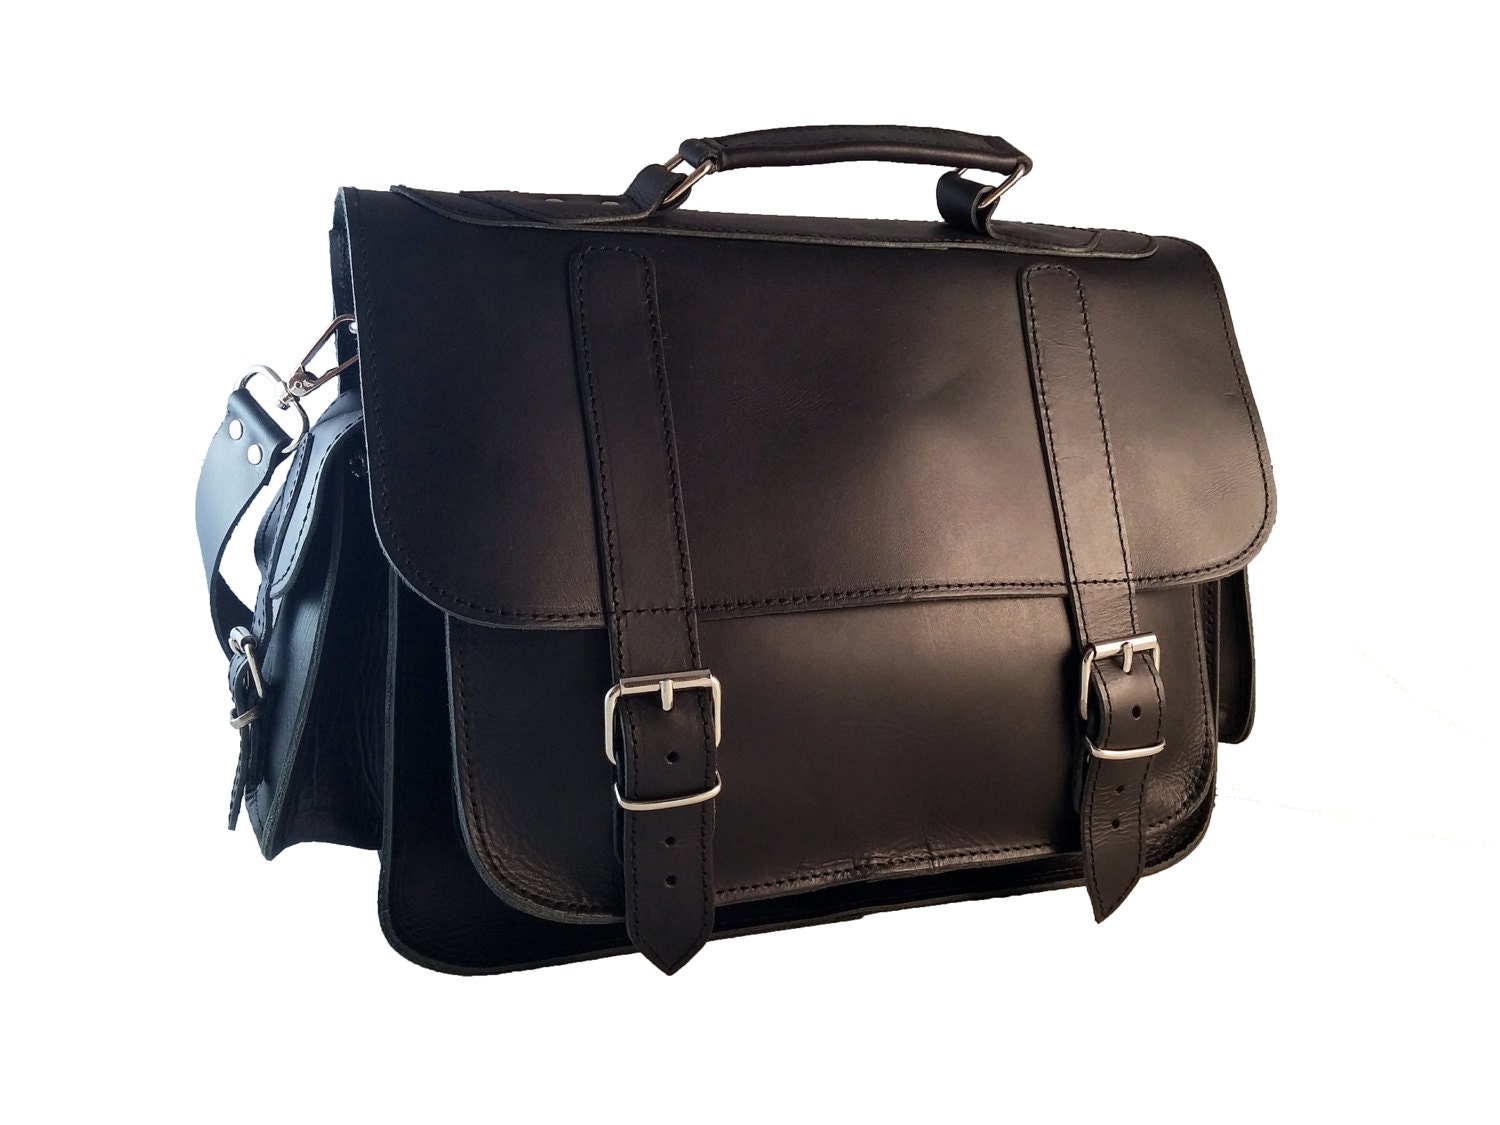 Full Grain Leather Messenger Bag. 13 inch Laptop Bag.